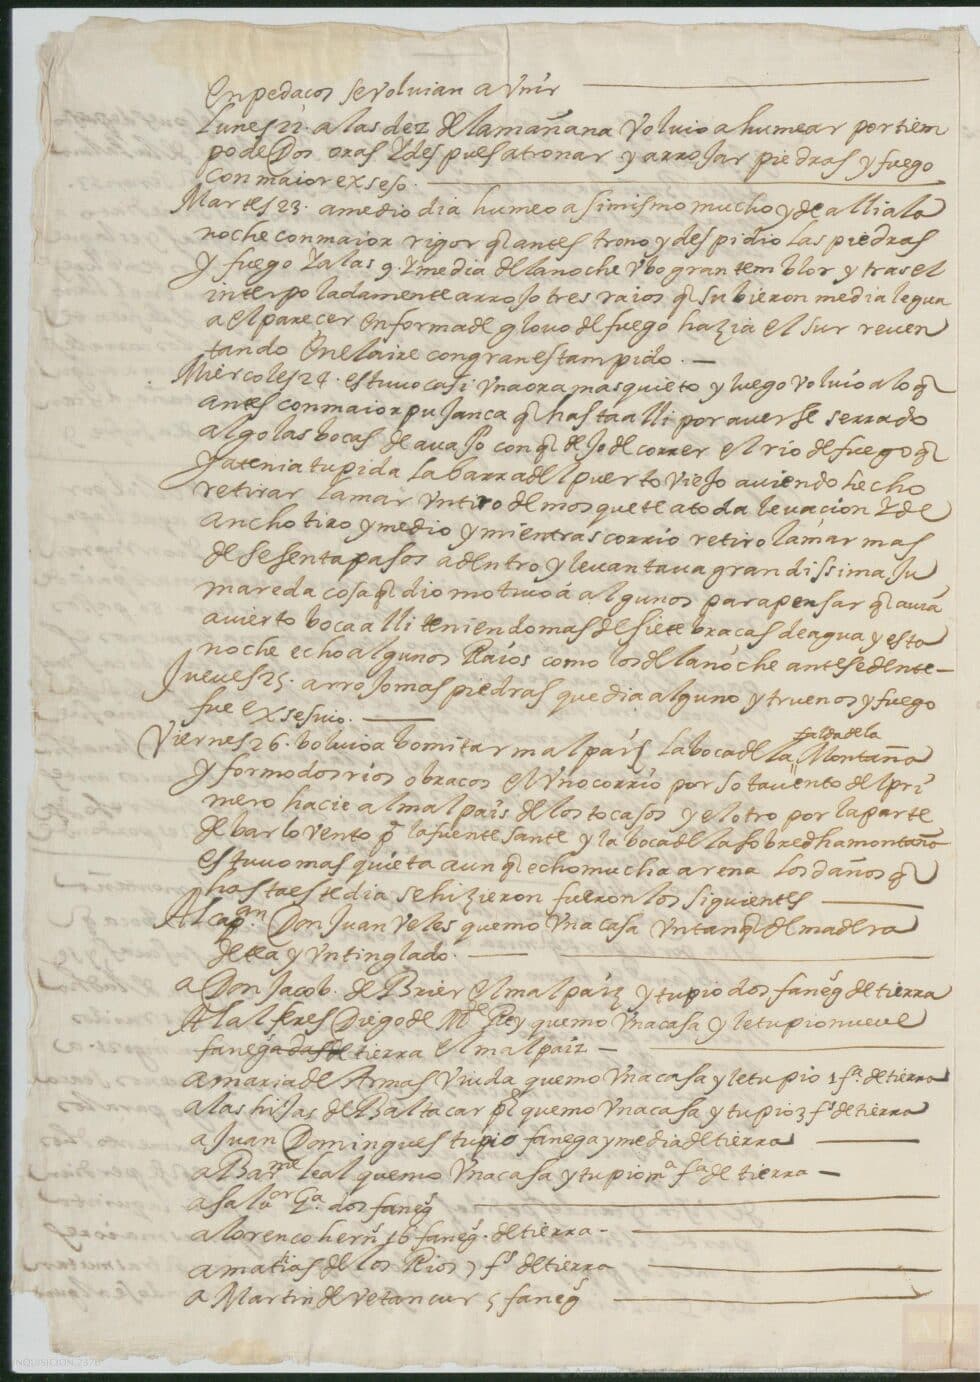 Documento enviado a la Inquisición en 1678 sobre una erupción en La Palma en 1677